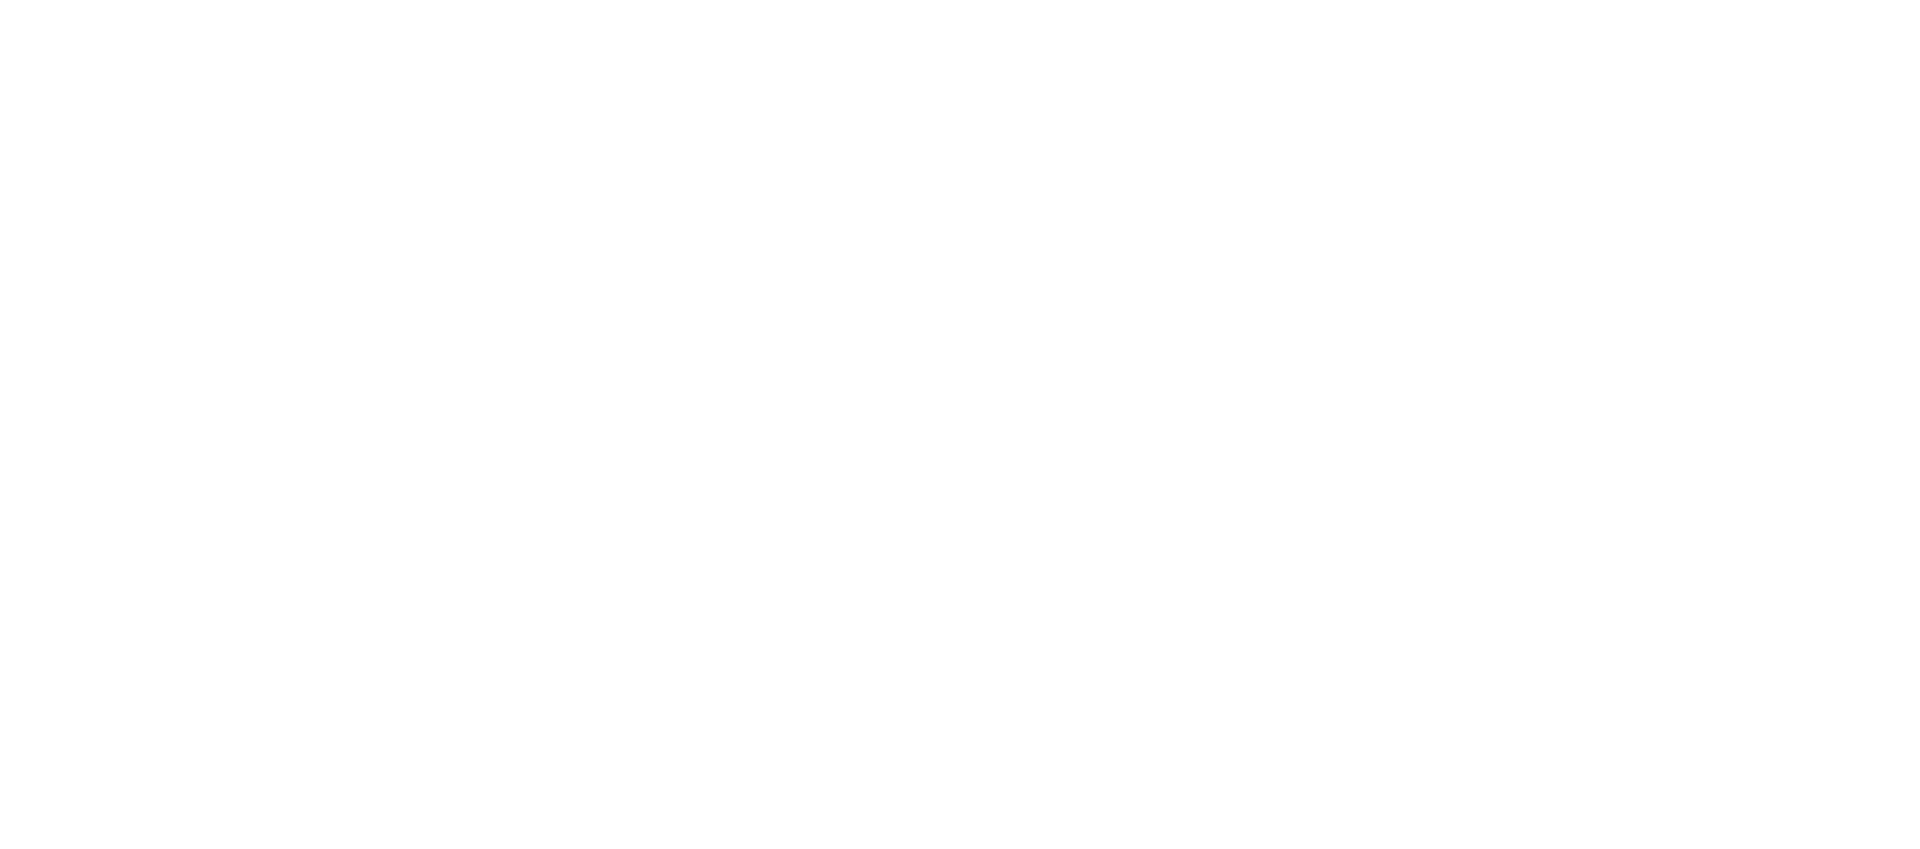 Felipe Queiroz -  Técnico Afinador de Pianos